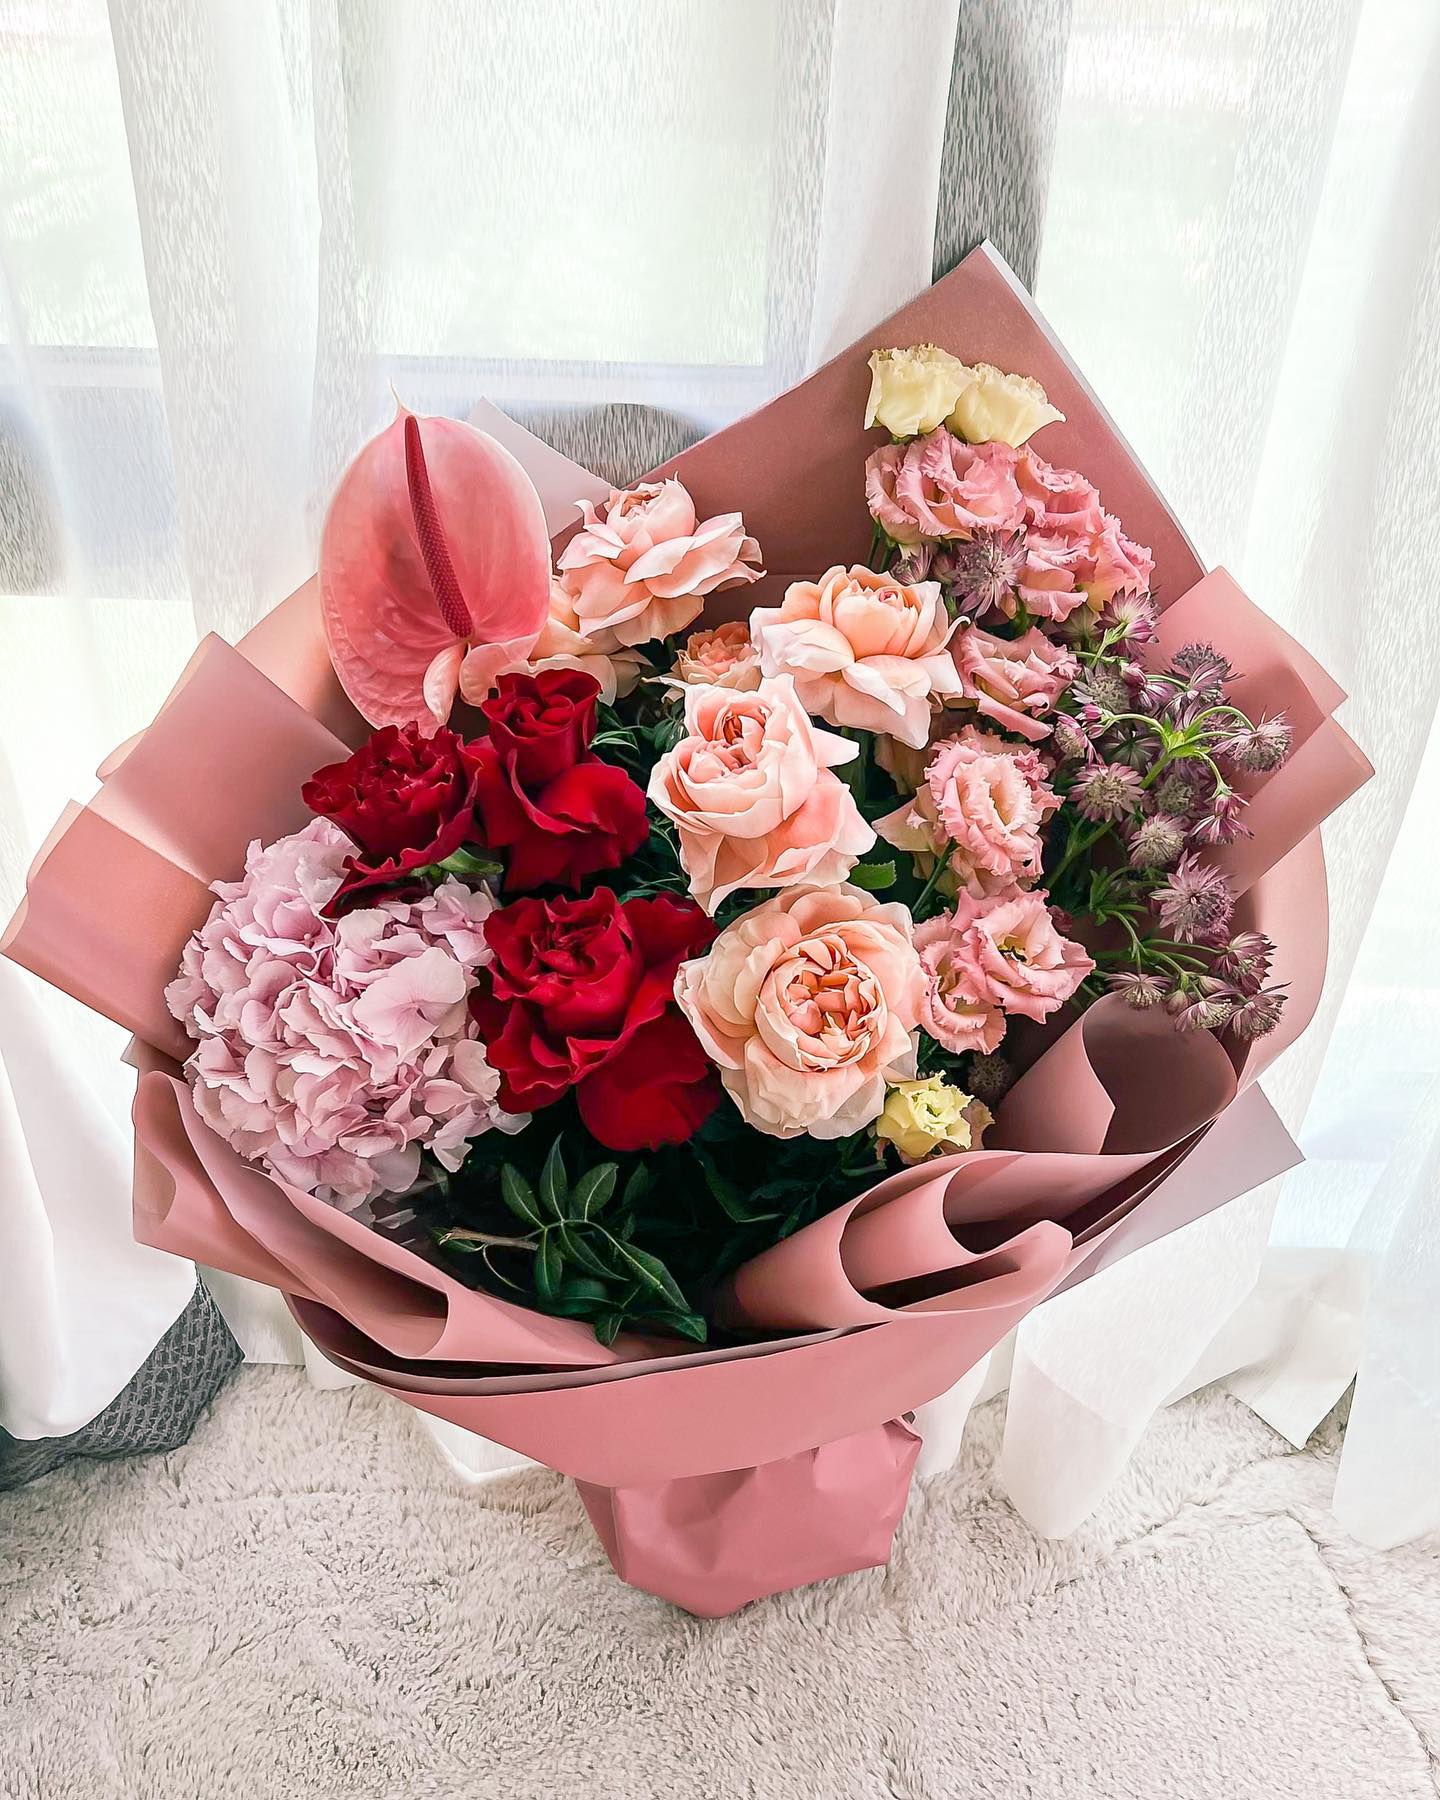 Kocham kwiaty 💝🌸💐
.
Zwłaszcza takie bez okazji 😉 
Ten piękny bukiet od @blissflowerboutique jest dla mnie wyjatkowy 🌸 dostałam go od przyjaciół @mac.vel.ras zebym szybciej wrociła do zdrowia ja dopadł mnie i nas wszystkich covid💖 wzruszyło mnie to bardzo ❤️
.
.
Nastrój od razu był lepszy i cudownie wciaż pachnie w całym domu 😍
.
A Ty lubisz kwiaty??? 😉
.
.
#kwiaty #flowers #roses #pinkroses🌹 #dlamnie #dlamamy #bezokazji #prezent #niespodzianka #iloveit❤️ #newhome #friends #fromfriends #myhappyplace #bukiet #blissflowersuae #lilia #inabudhabi🇦🇪 #blissabudhabi #swiezekwiaty #kwiatycięte #bukietmieszany #roses #redroses🌹